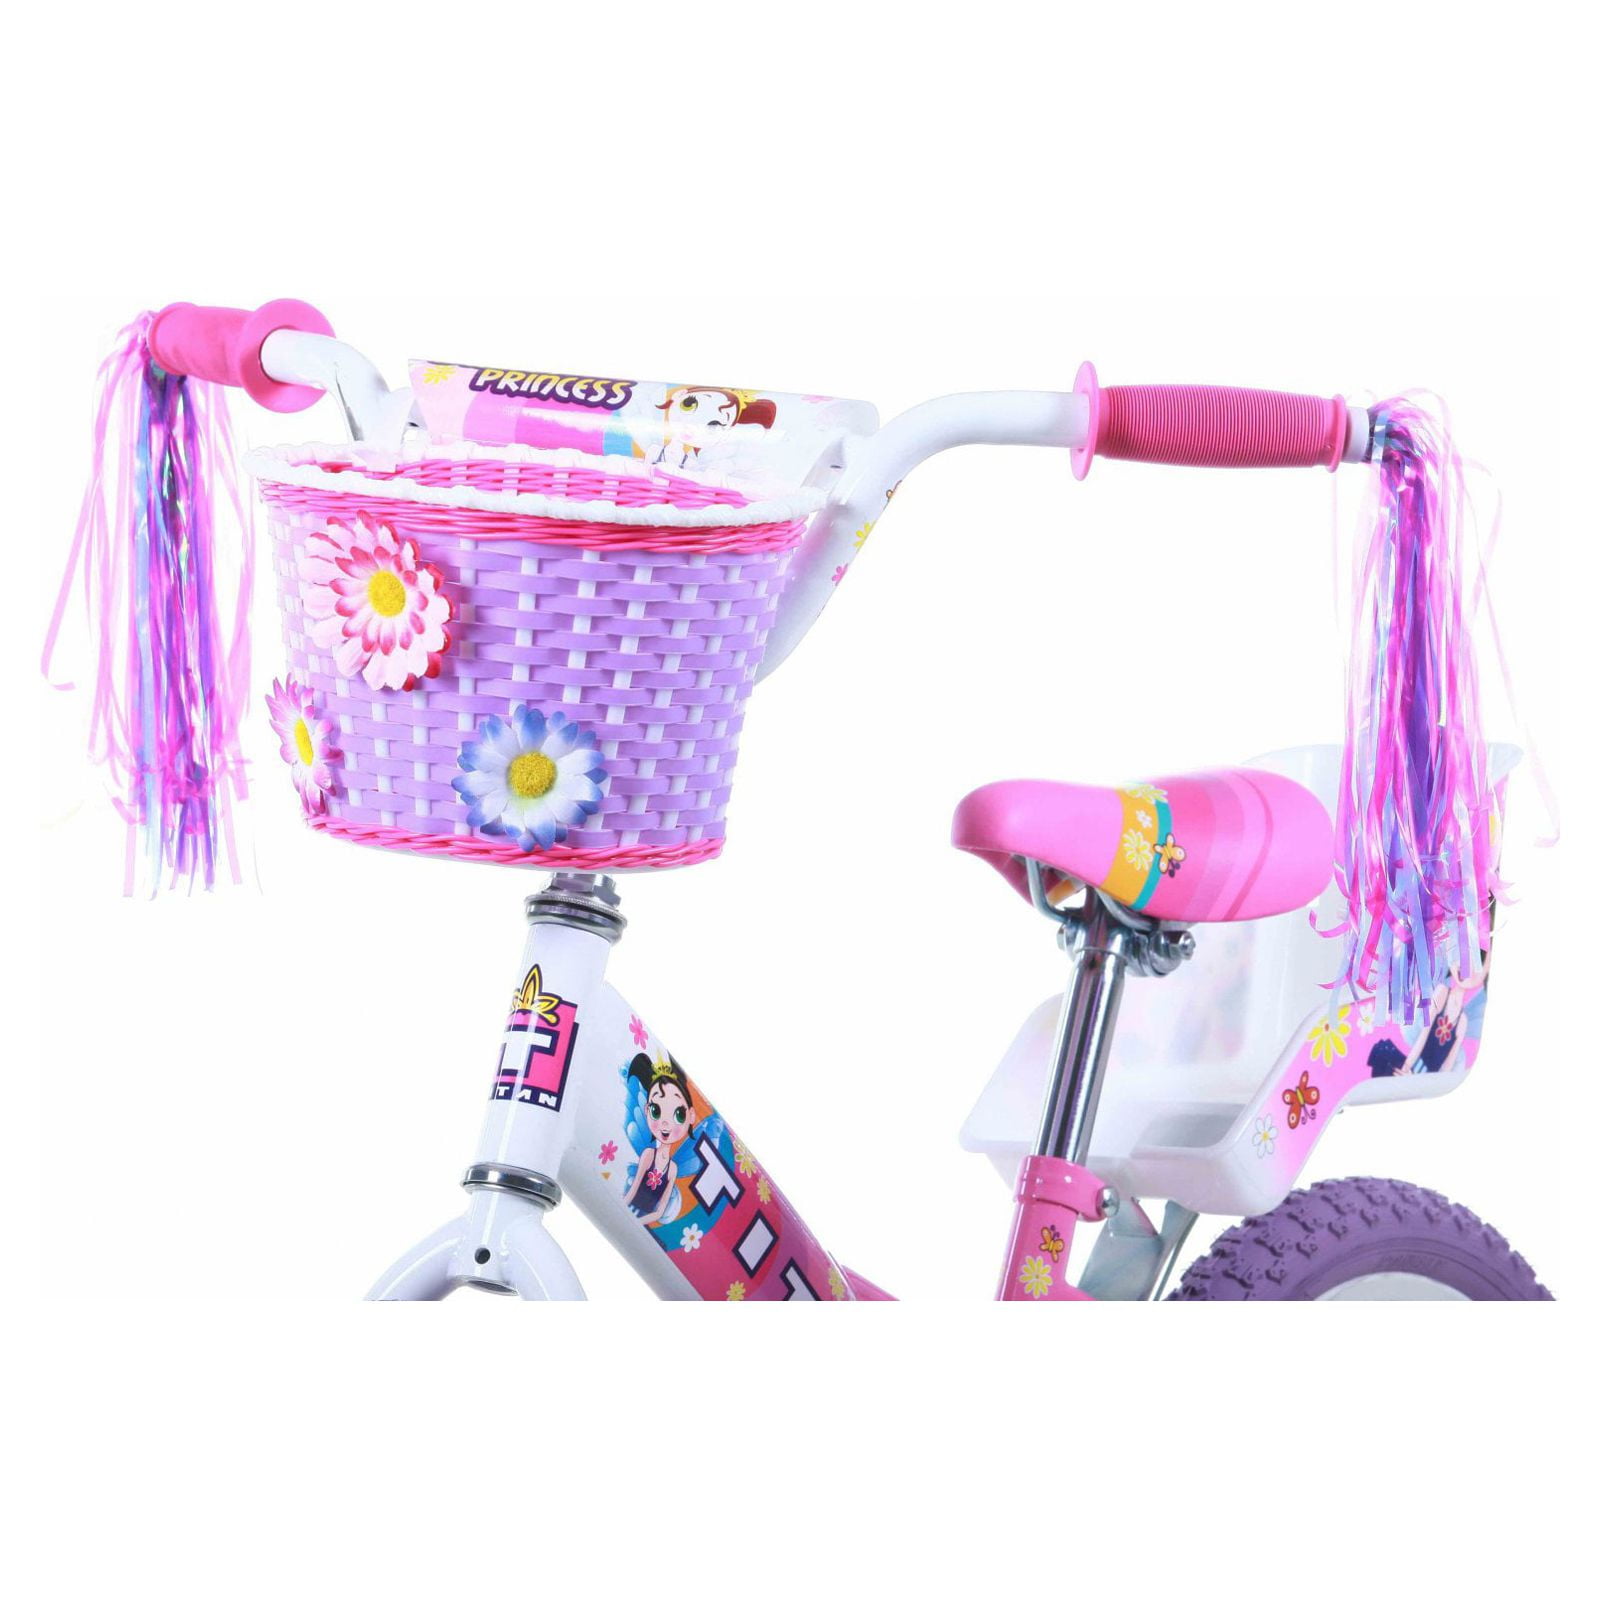 Comprar Bicicleta 16 Bmx Princesa para niñas de 6 a 8 años Modelo PRI160